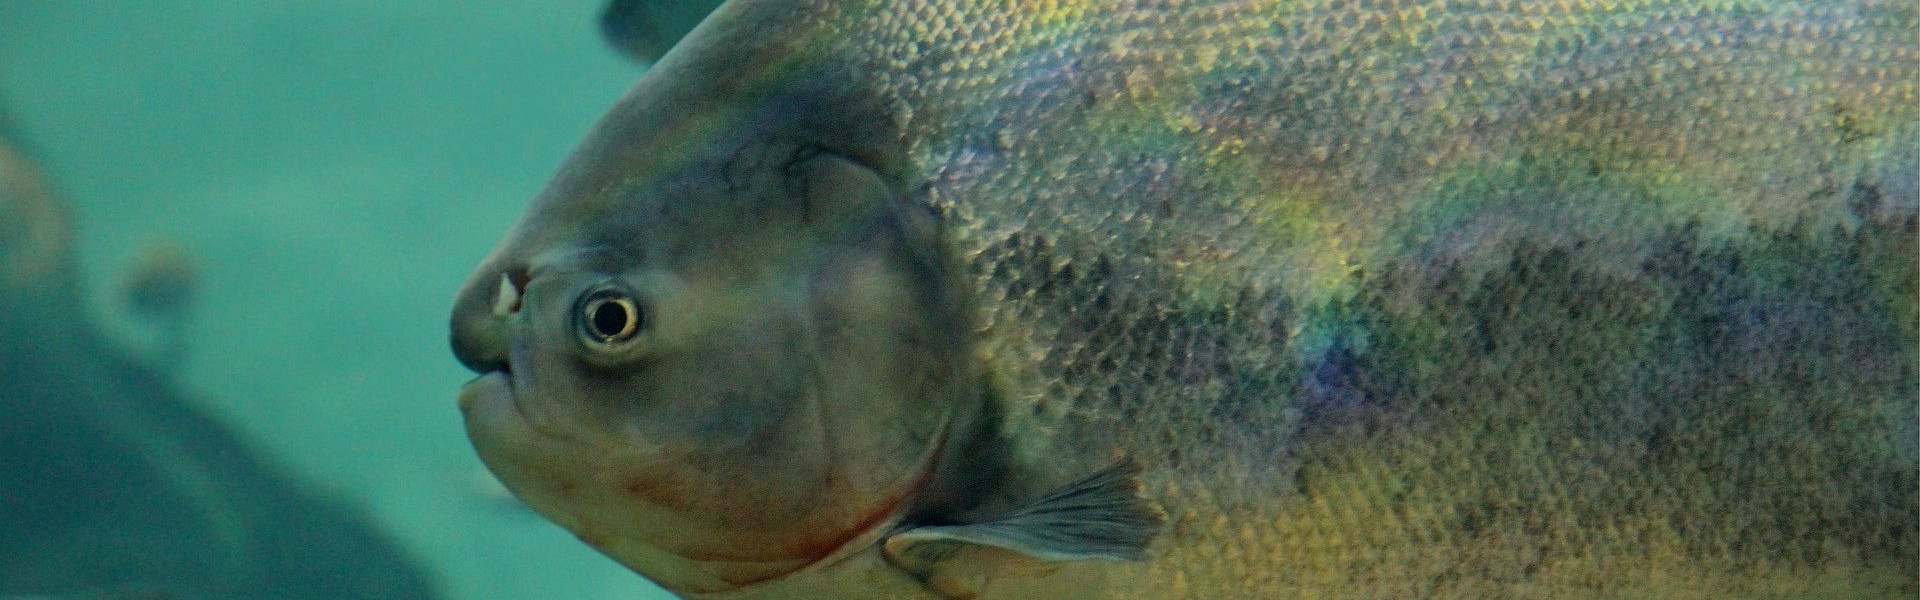 Peixe brasileiro na Irlanda? Exemplar de Pacu é encontrado em lago perto de Dublin